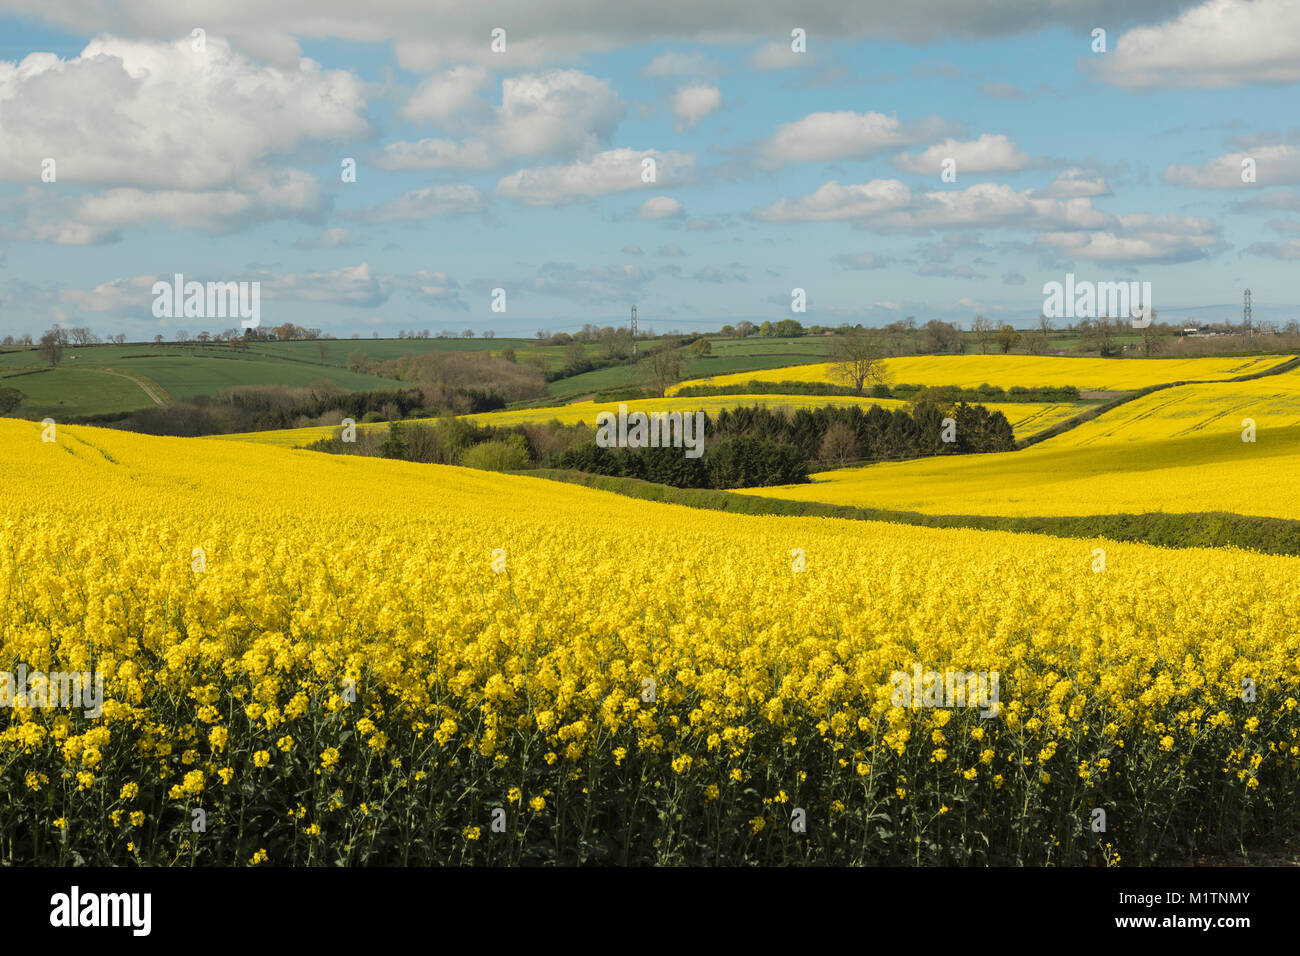 Una imagen de campos de colza en inglés de granjas. Foto de stock